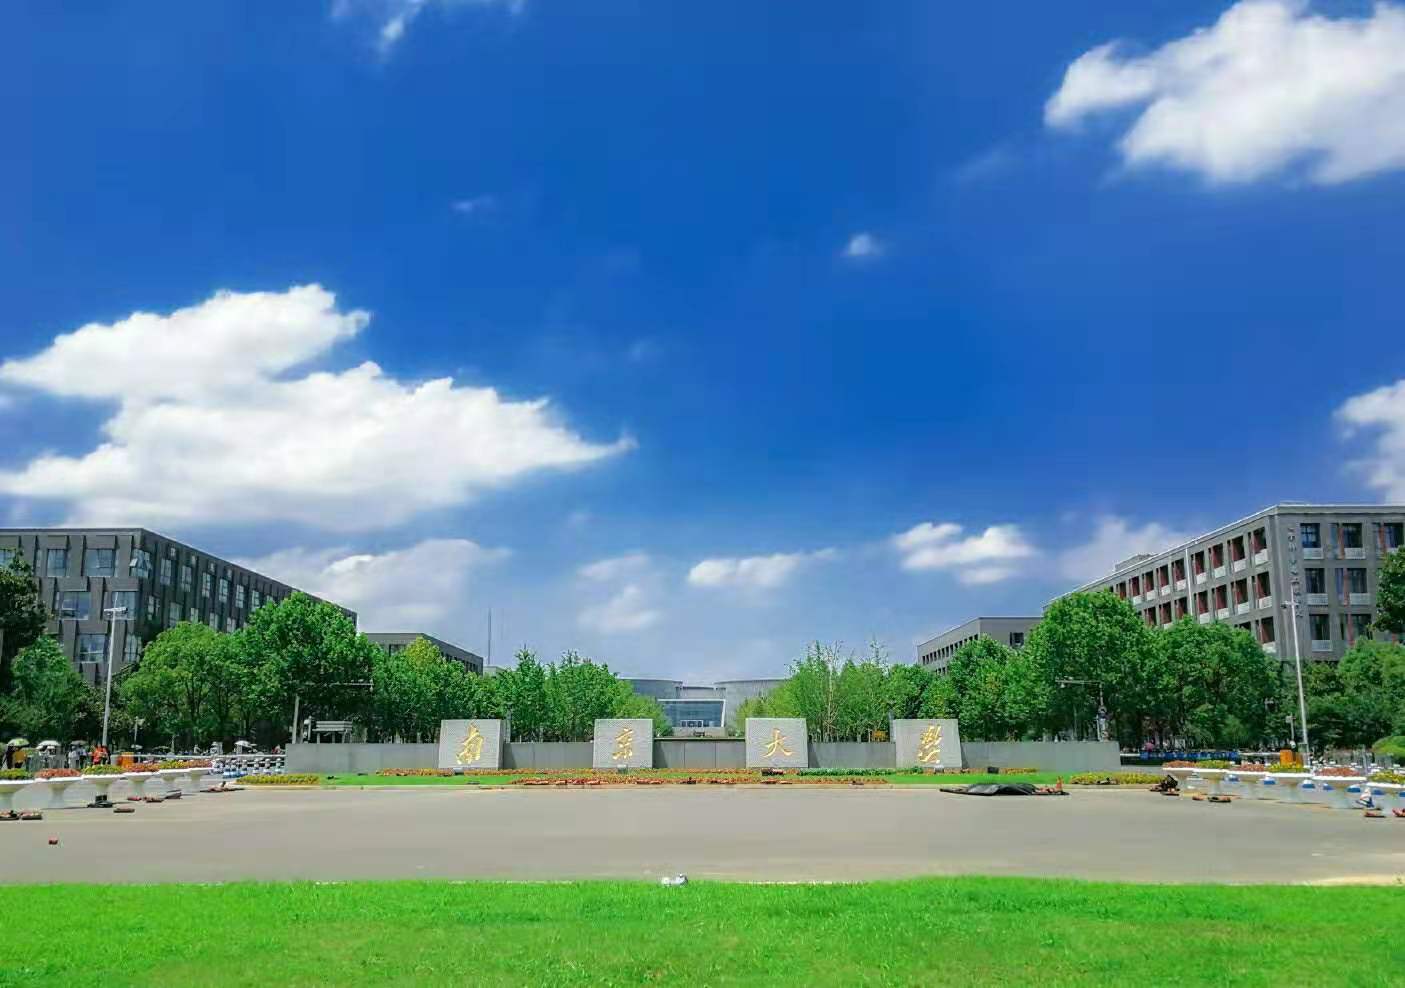 江苏省大学排名2021最新排名 2021年江苏省高校排行榜